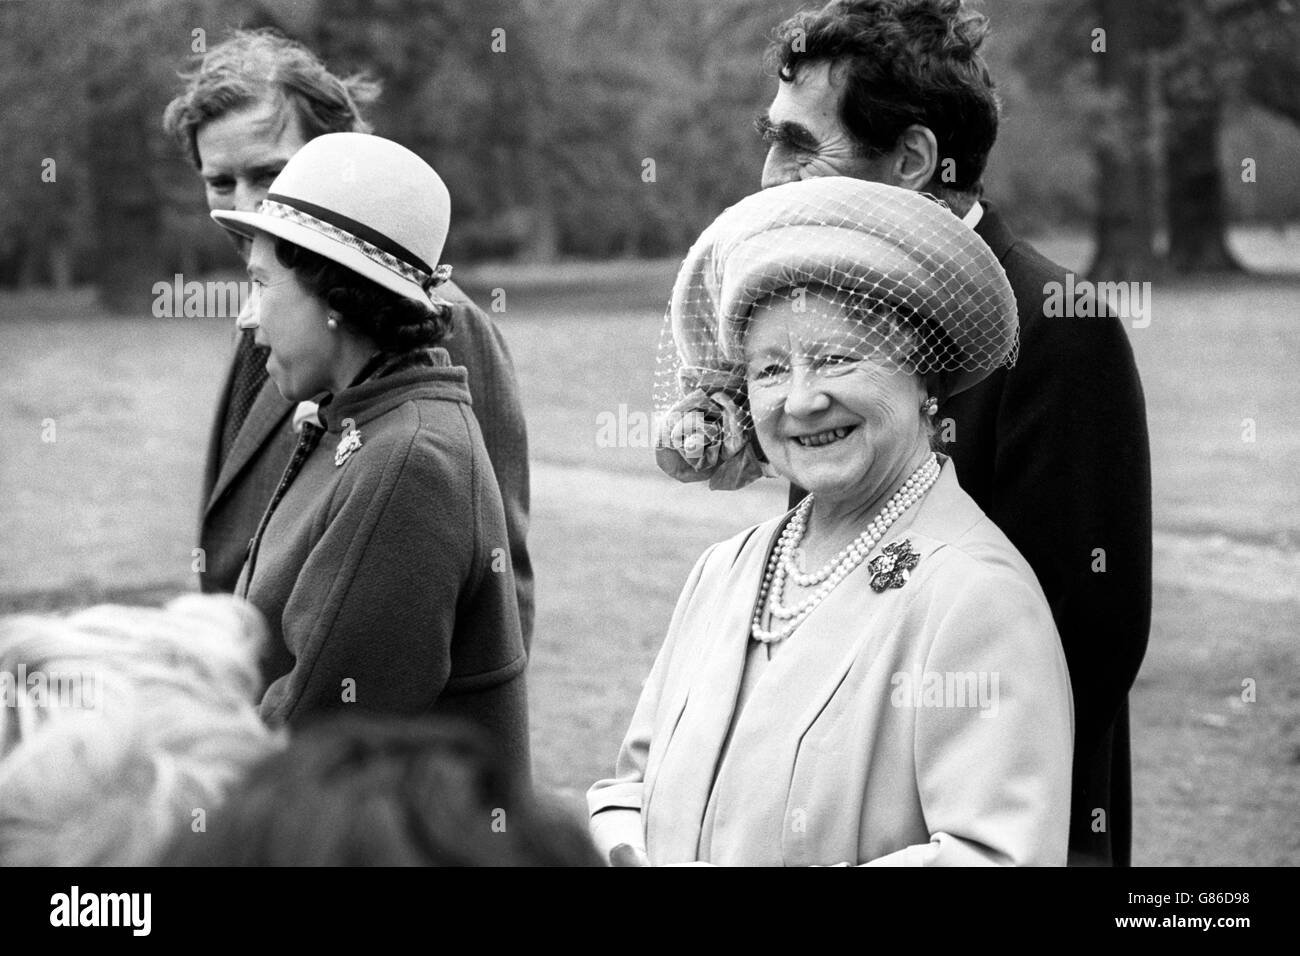 Königin Elizabeth, die Königin Mutter, mit Königin Elizabeth II., im Windsor Great Park für eine Baumpflanzung. Die Königin-Mutter pflanzte eine purpurne Dawyck-Buche zur Nationalbaumwoche, und Königin Elizabeth II. Pflanzte einen identischen Baum zu Ehren des 80. Geburtstages ihrer königlichen Mutter. Stockfoto